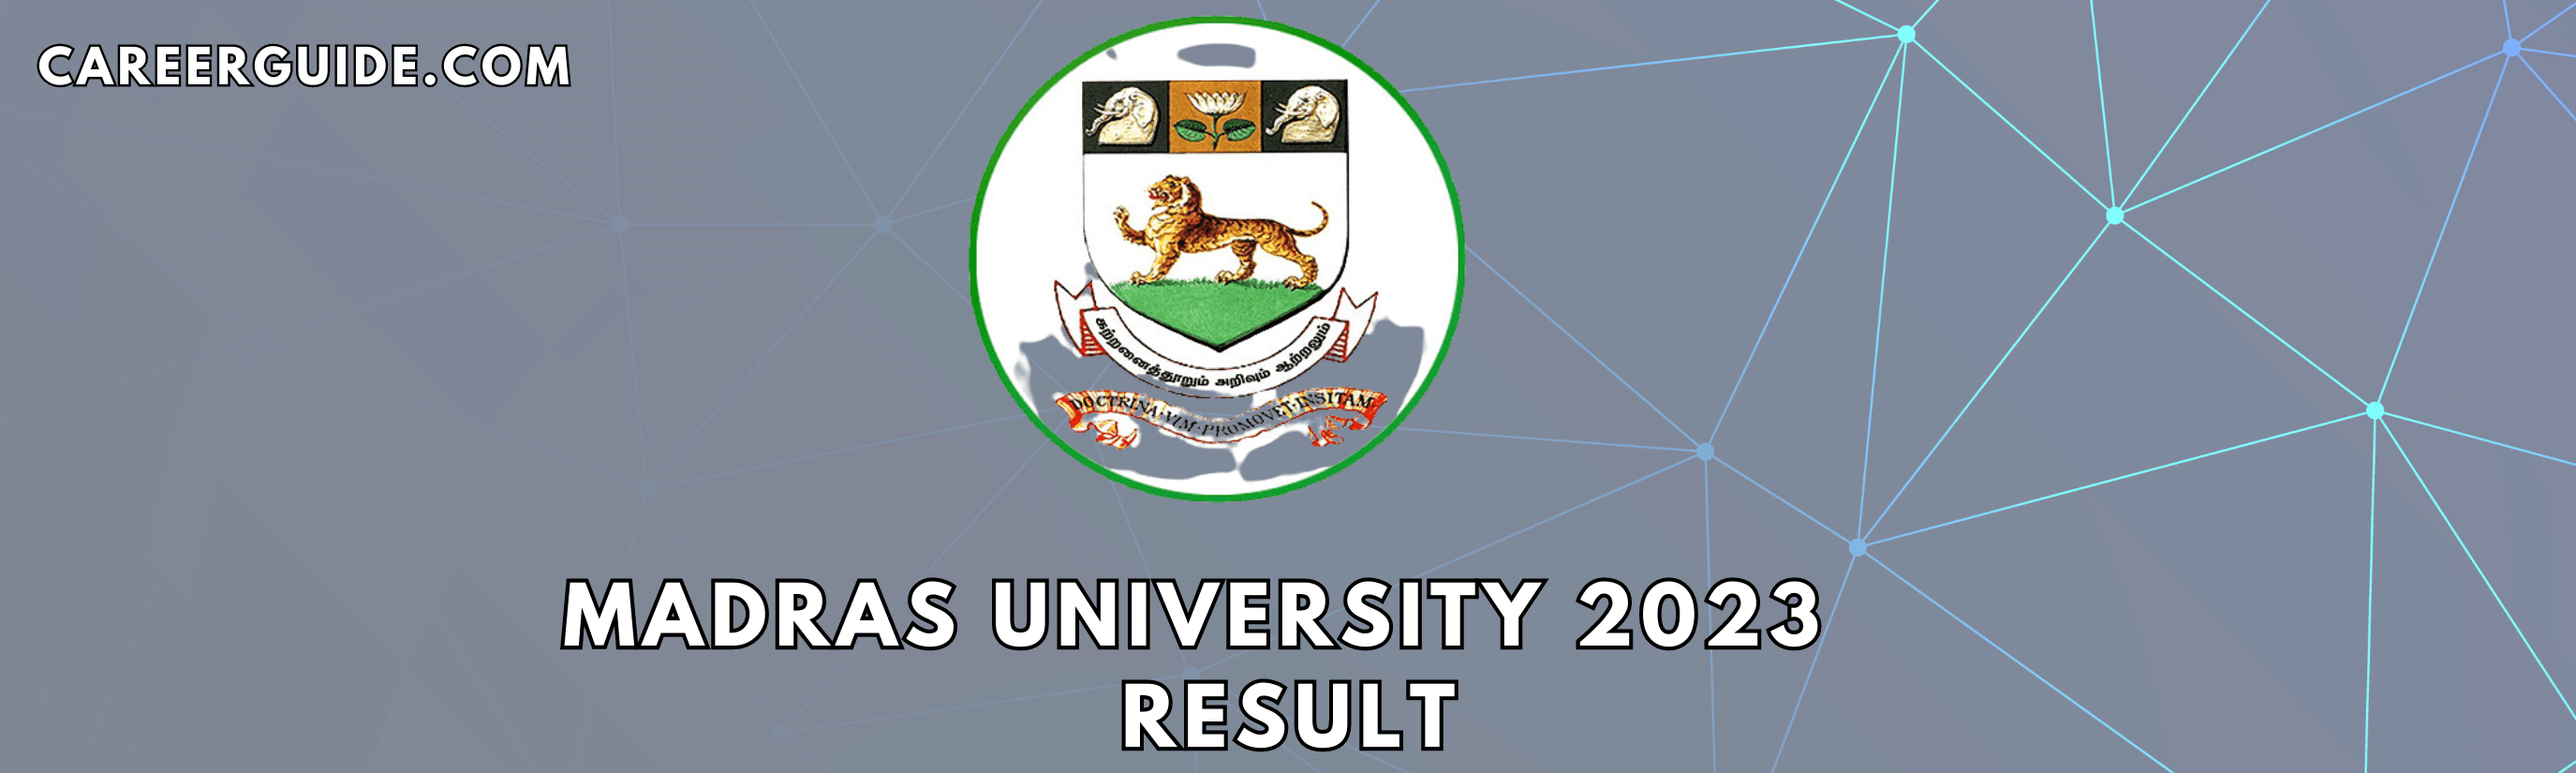 Madras University Result 2023 - careeguide.com